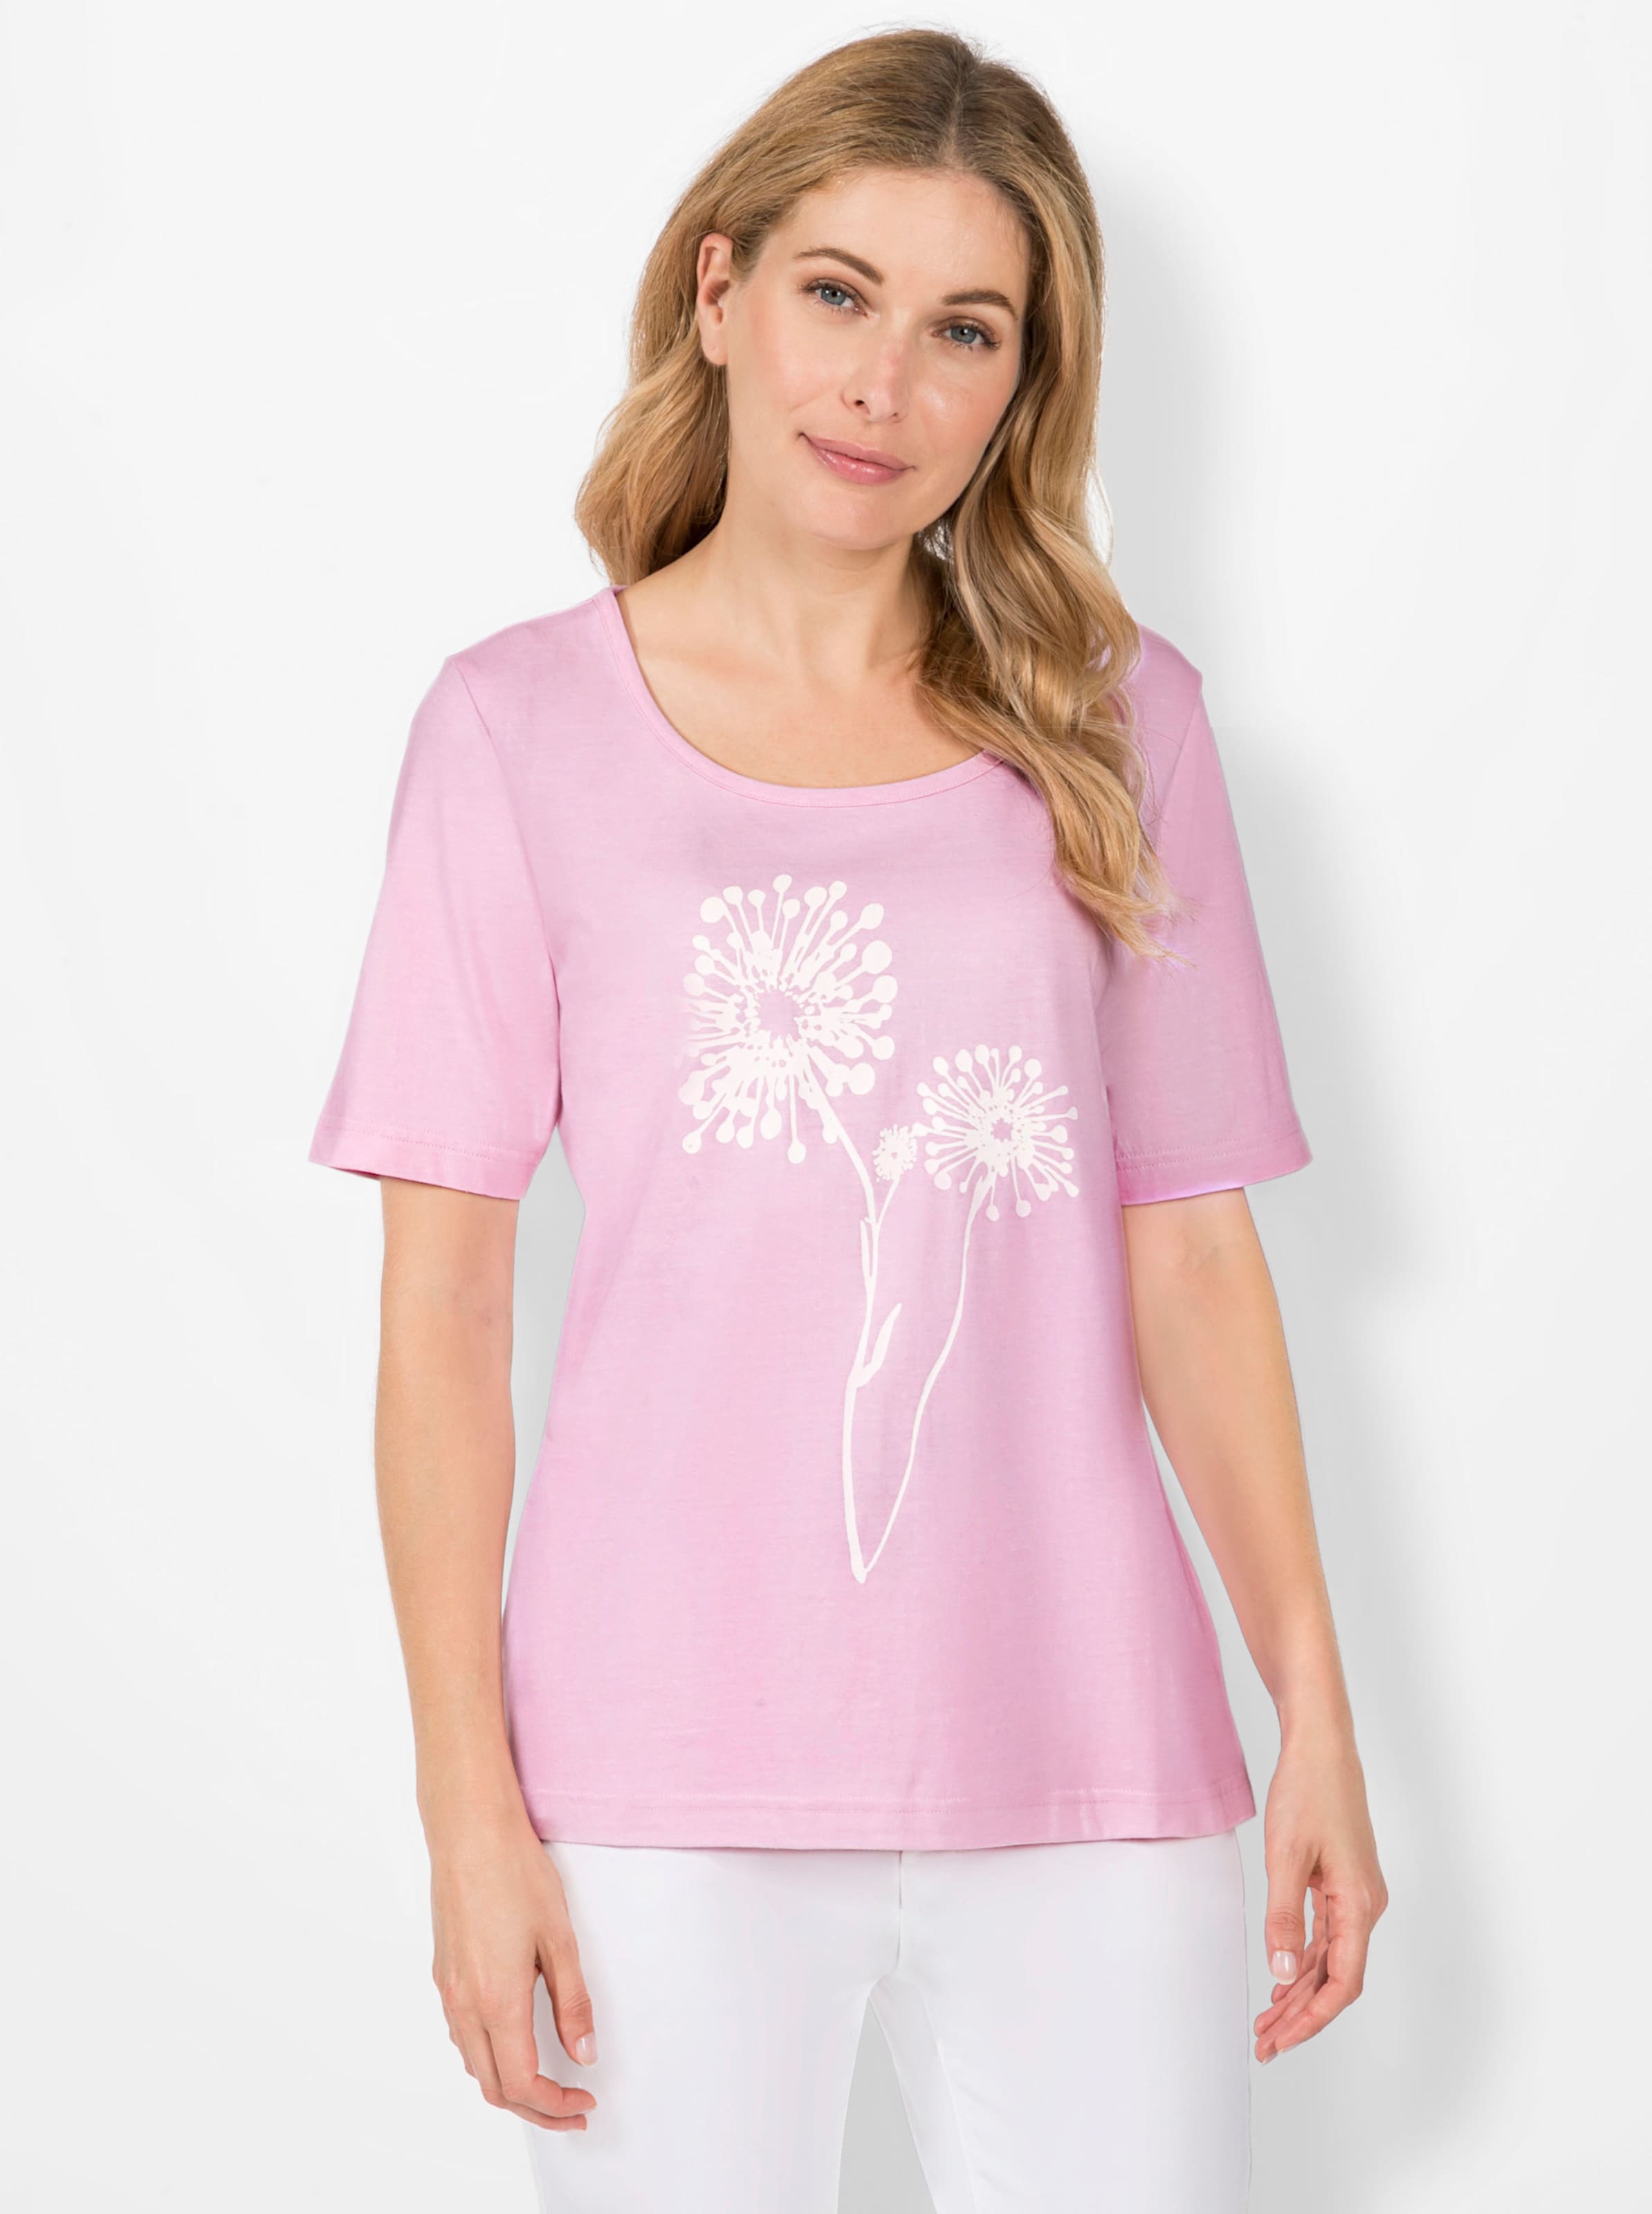 heute günstig Kaufen-Print-Shirt in rosé von heine. Print-Shirt in rosé von heine <![CDATA[Pusteblumen haben uns schon als Kinder fasziniert – und weil sie auch heute nichts von ihrem Reiz verloren haben schmücken sie als wunderschönes Druck-Motiv dieses Shirt. 